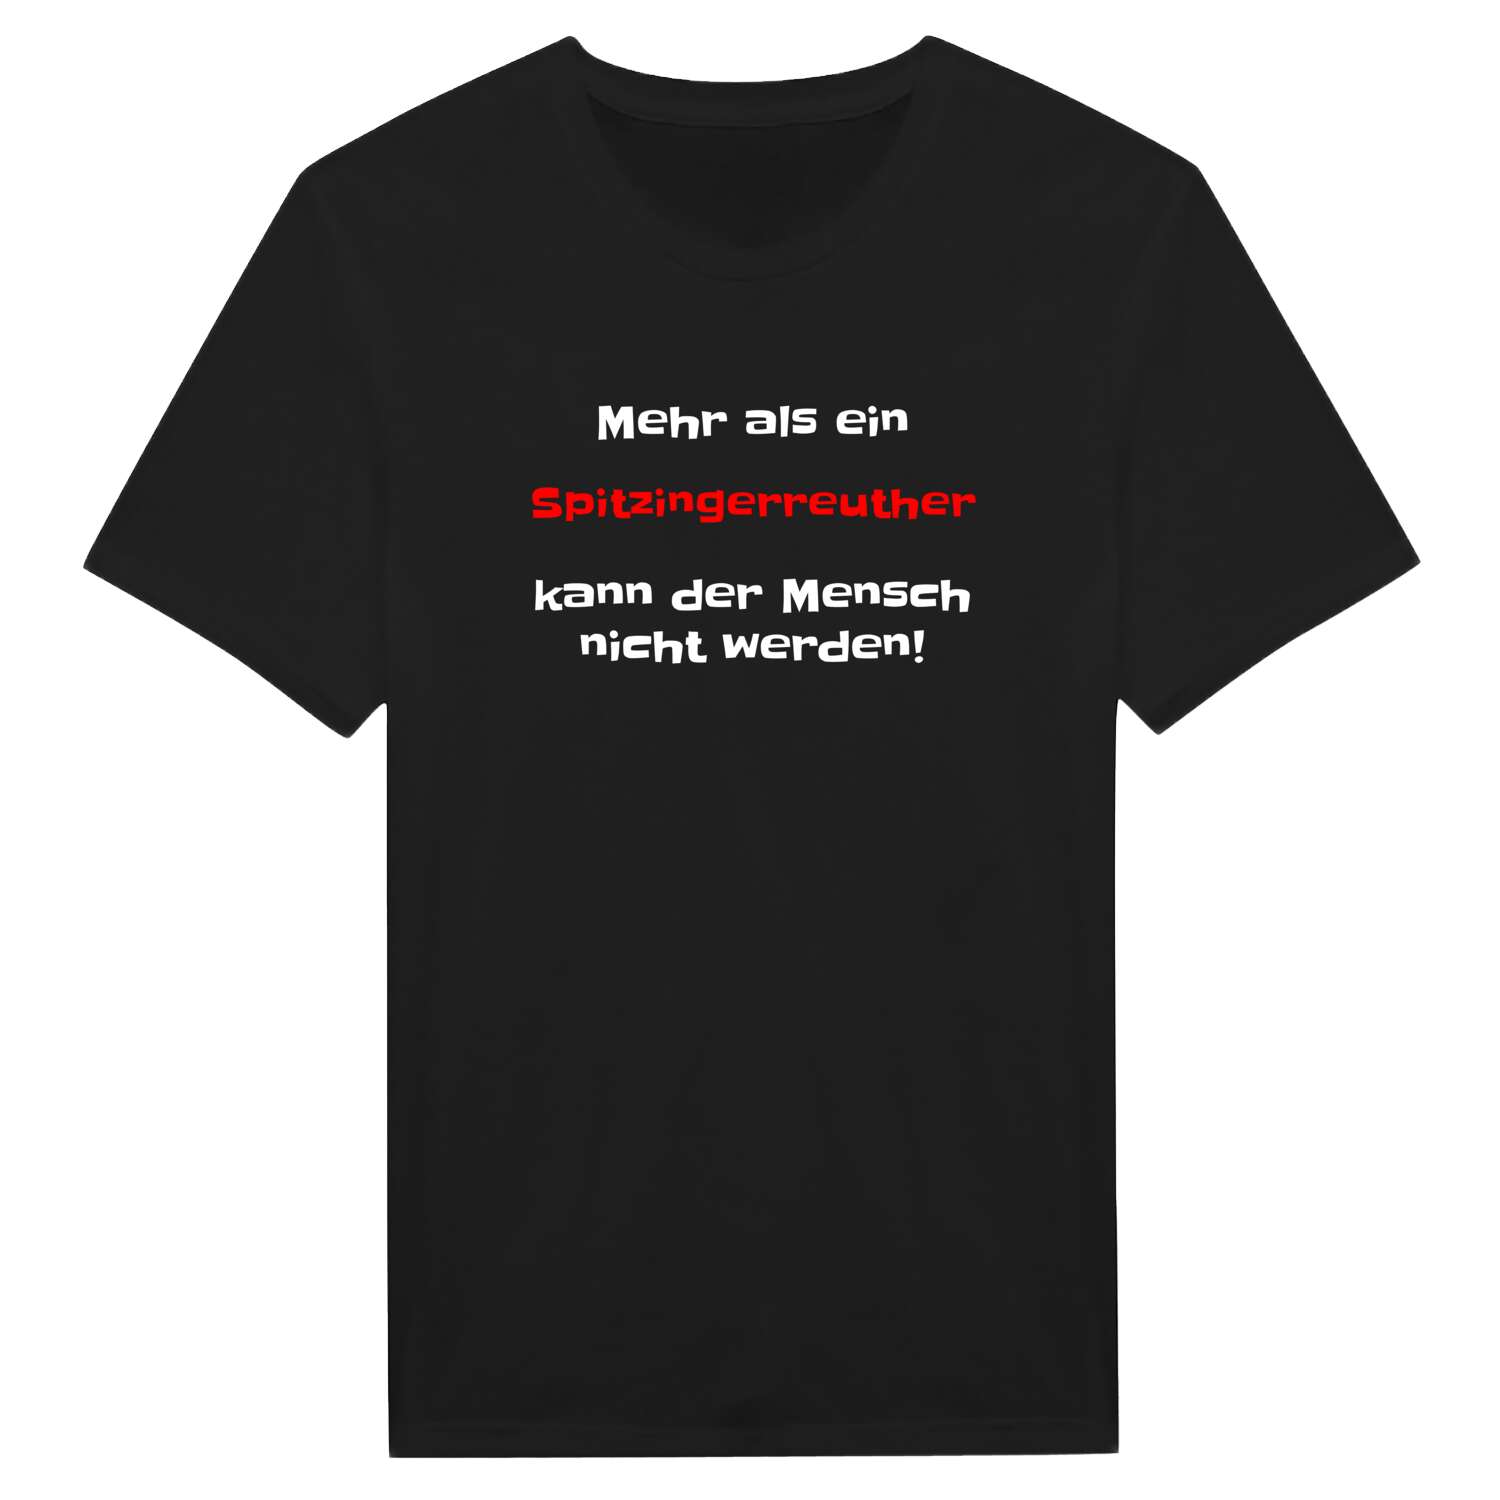 Spitzingerreuth T-Shirt »Mehr als ein«